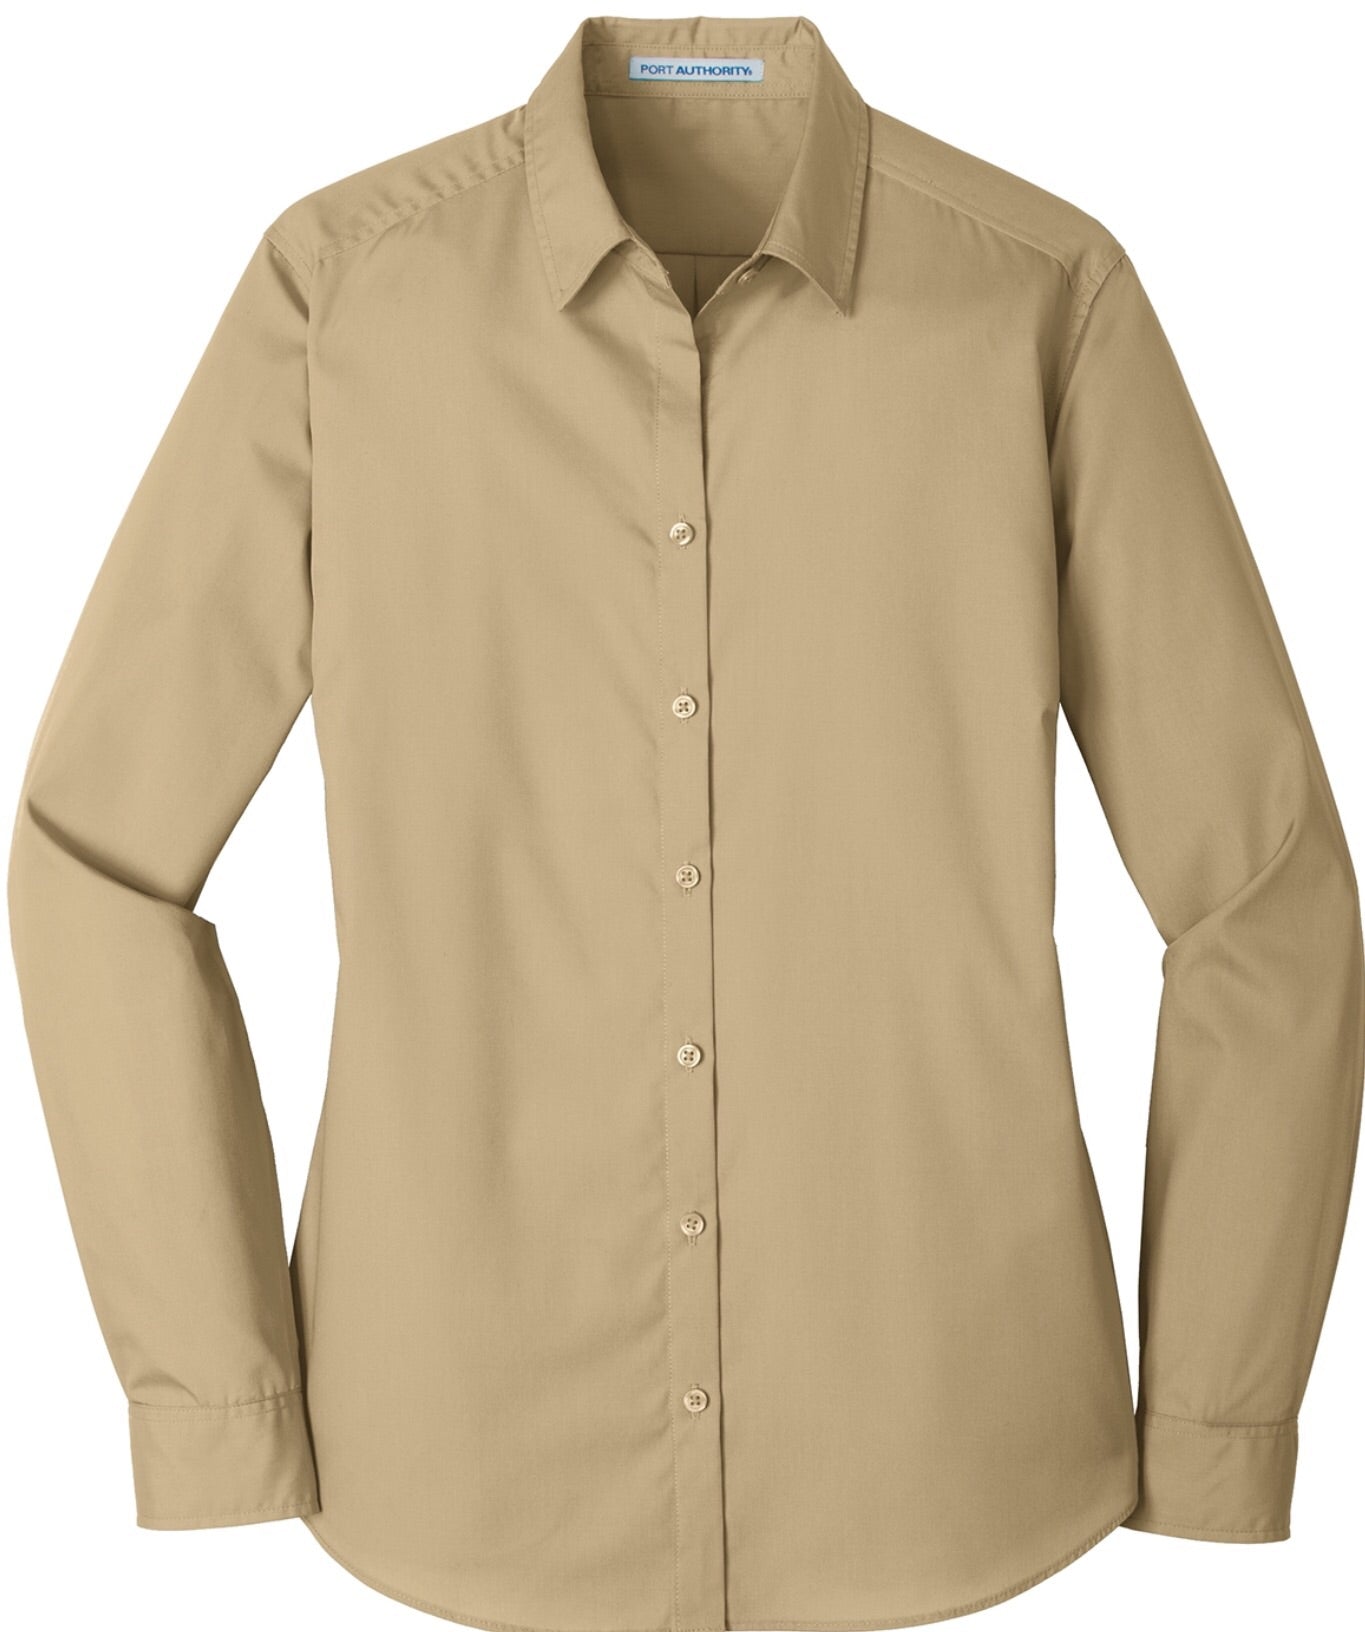 Lightweight Button Up Show Shirt - Sparkling Cowgirl